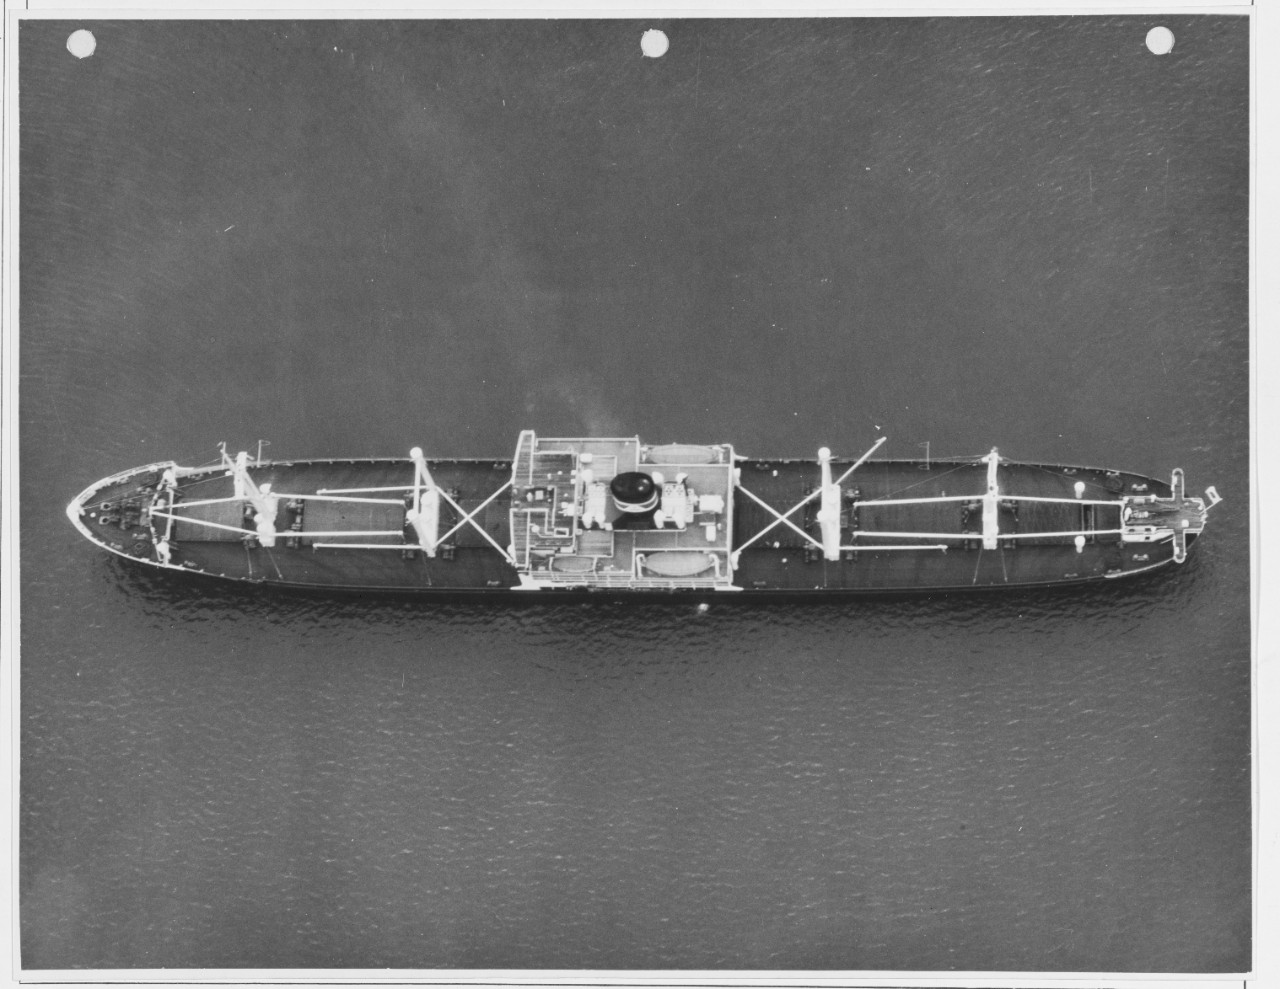 Japanese ship: KIYOSUMI MARU, July 17, 1937